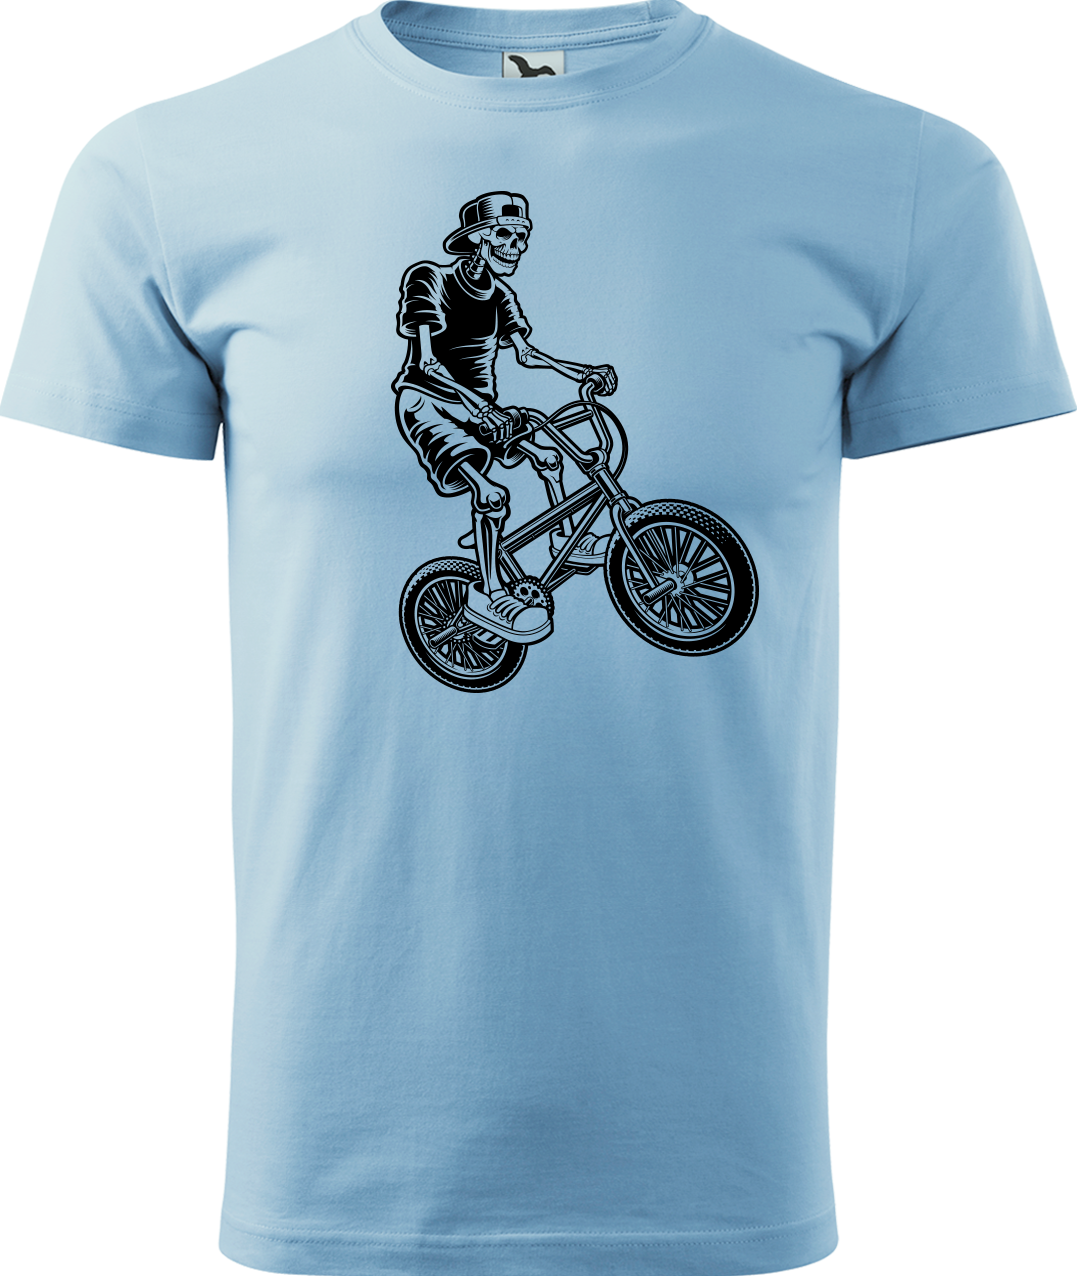 Pánské tričko s kolem - Trial Bike Velikost: 3XL, Barva: Nebesky modrá (15)